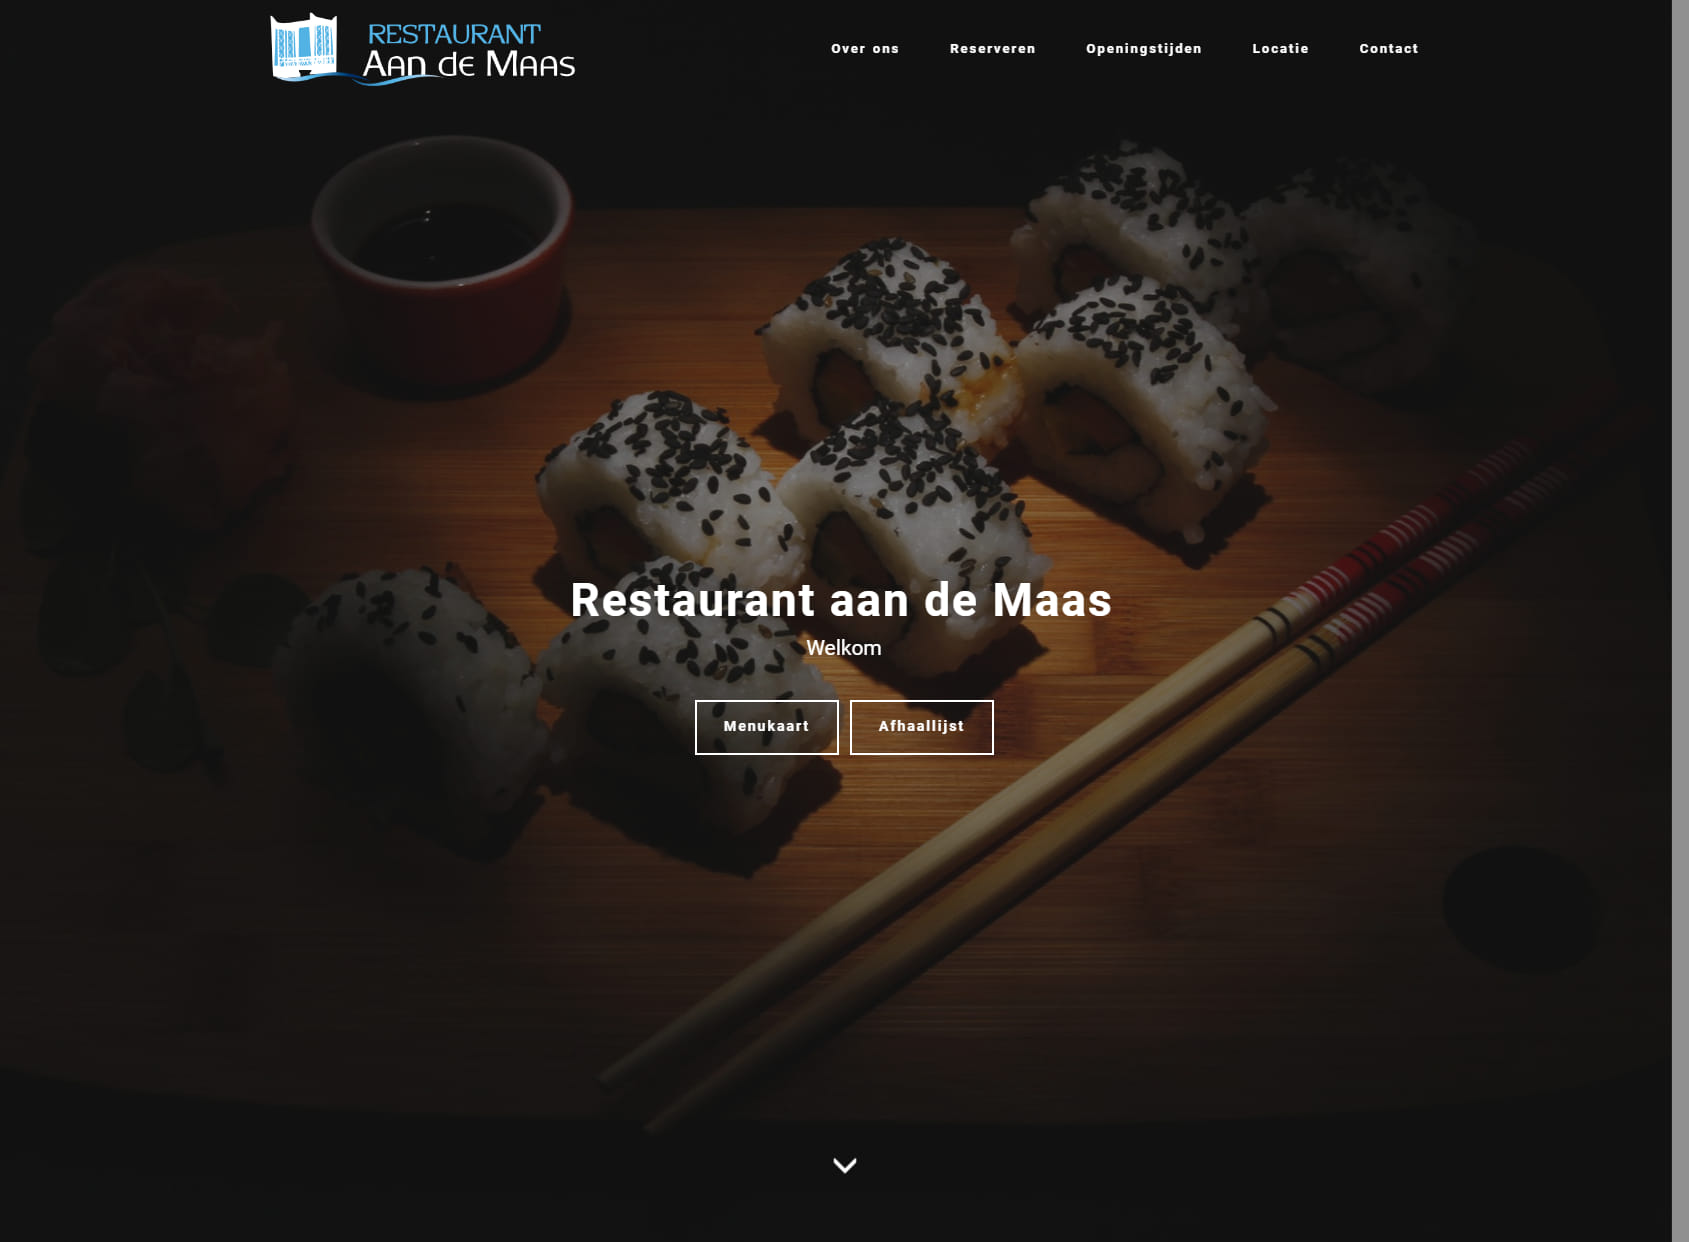 Restaurant aan de Maas